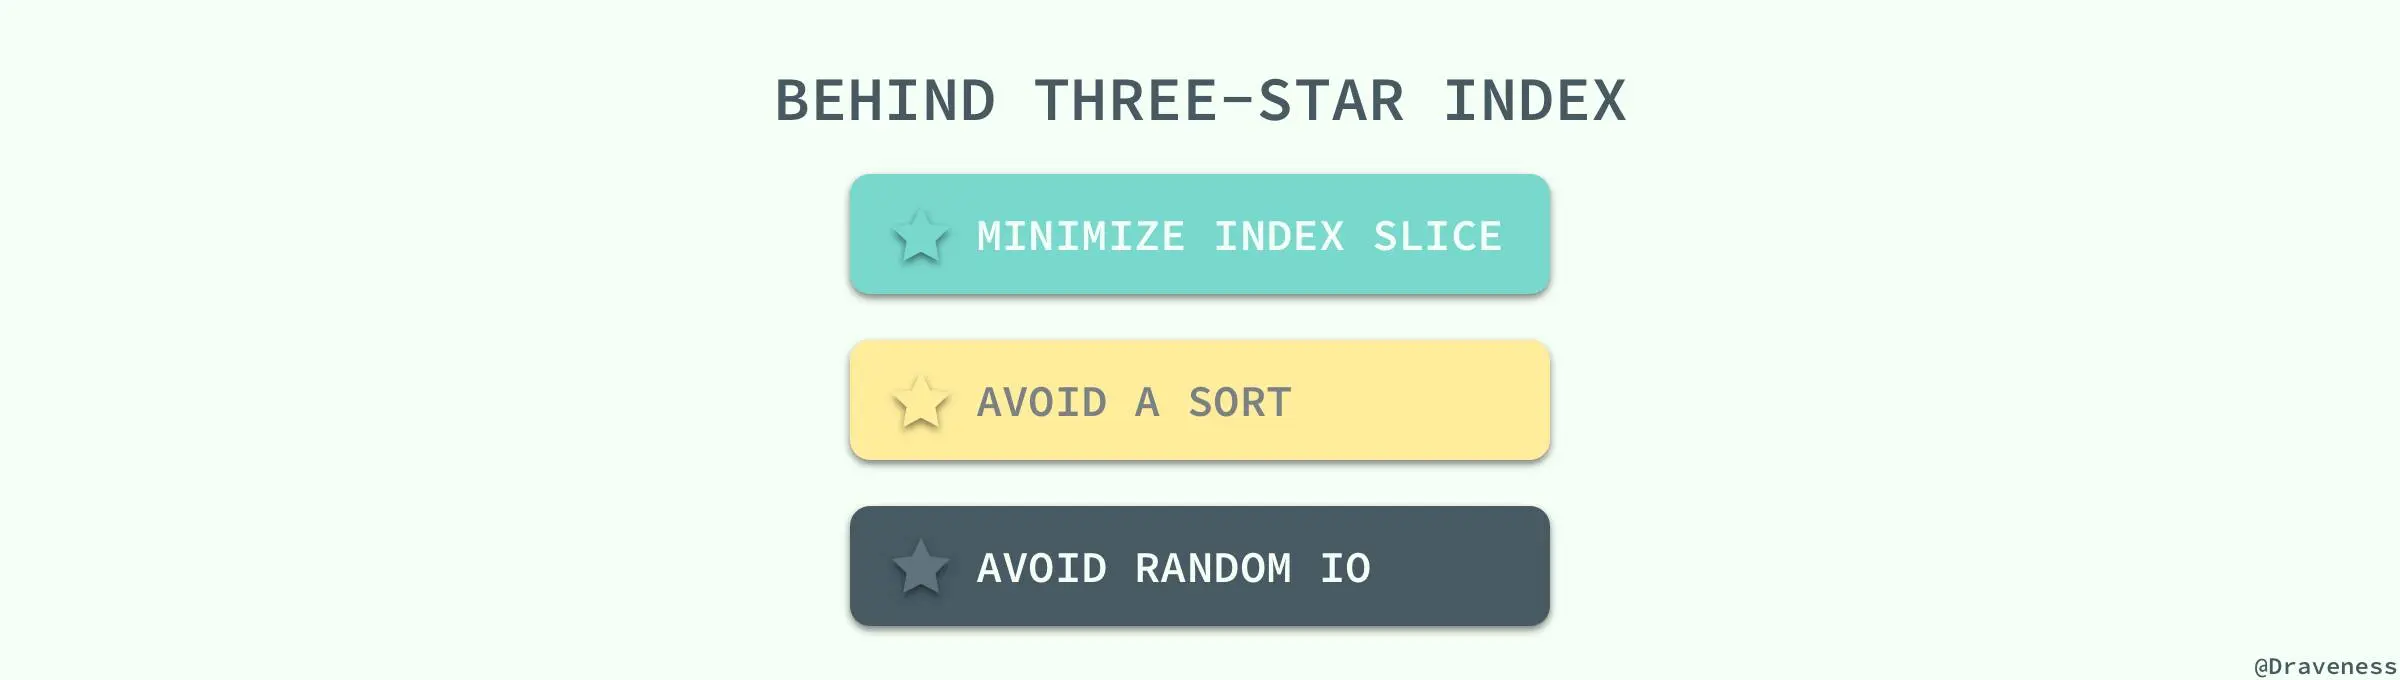 Behind-Three-Star-Index